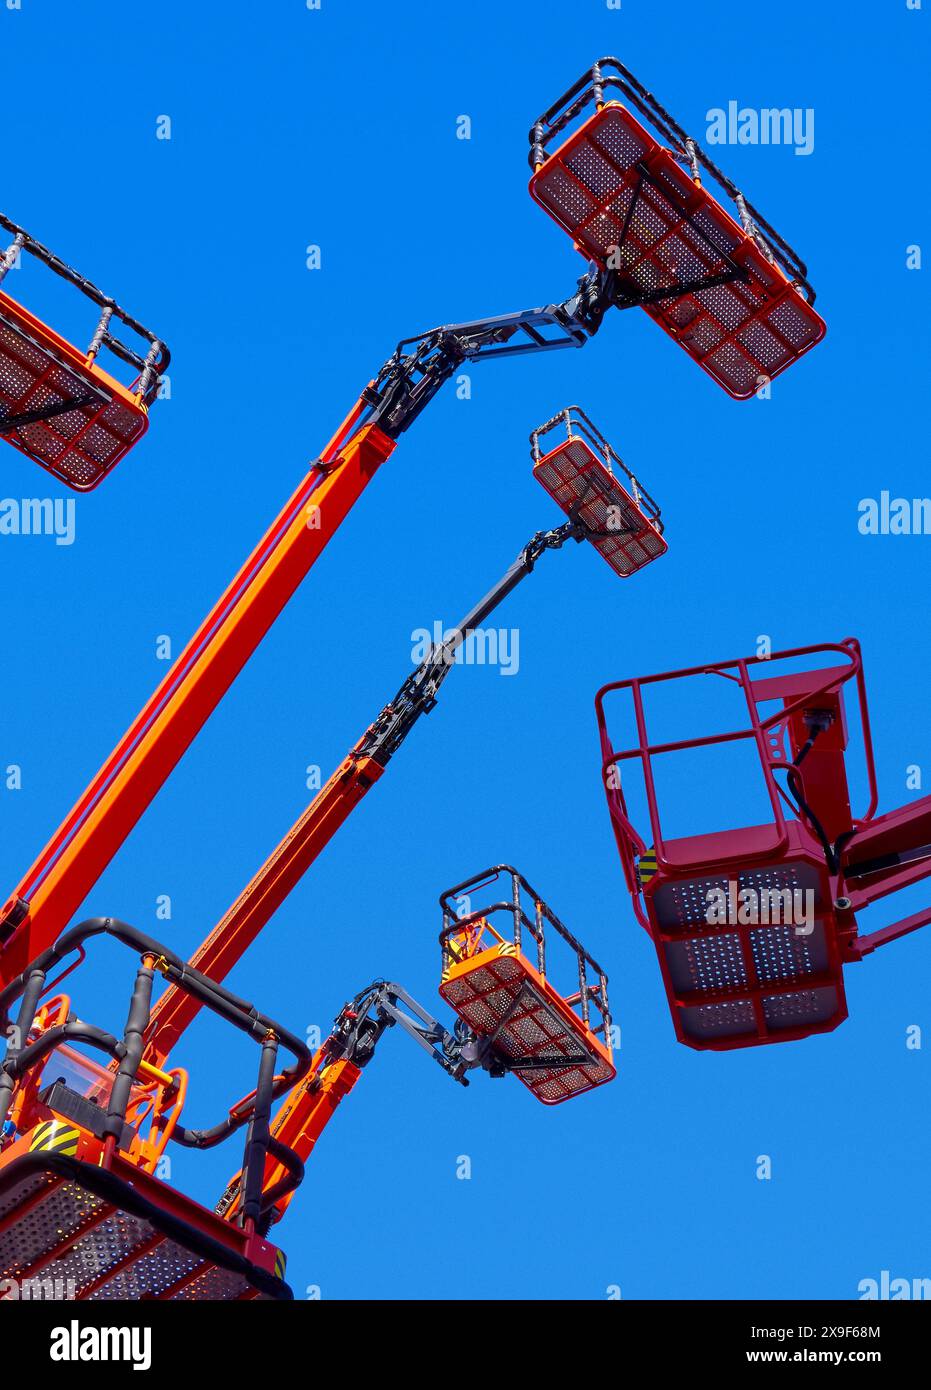 Grand groupe de grues articulées, paniers et bras hydrauliques haut dans un ciel bleu clair, plan de perspective à faible angle. Banque D'Images